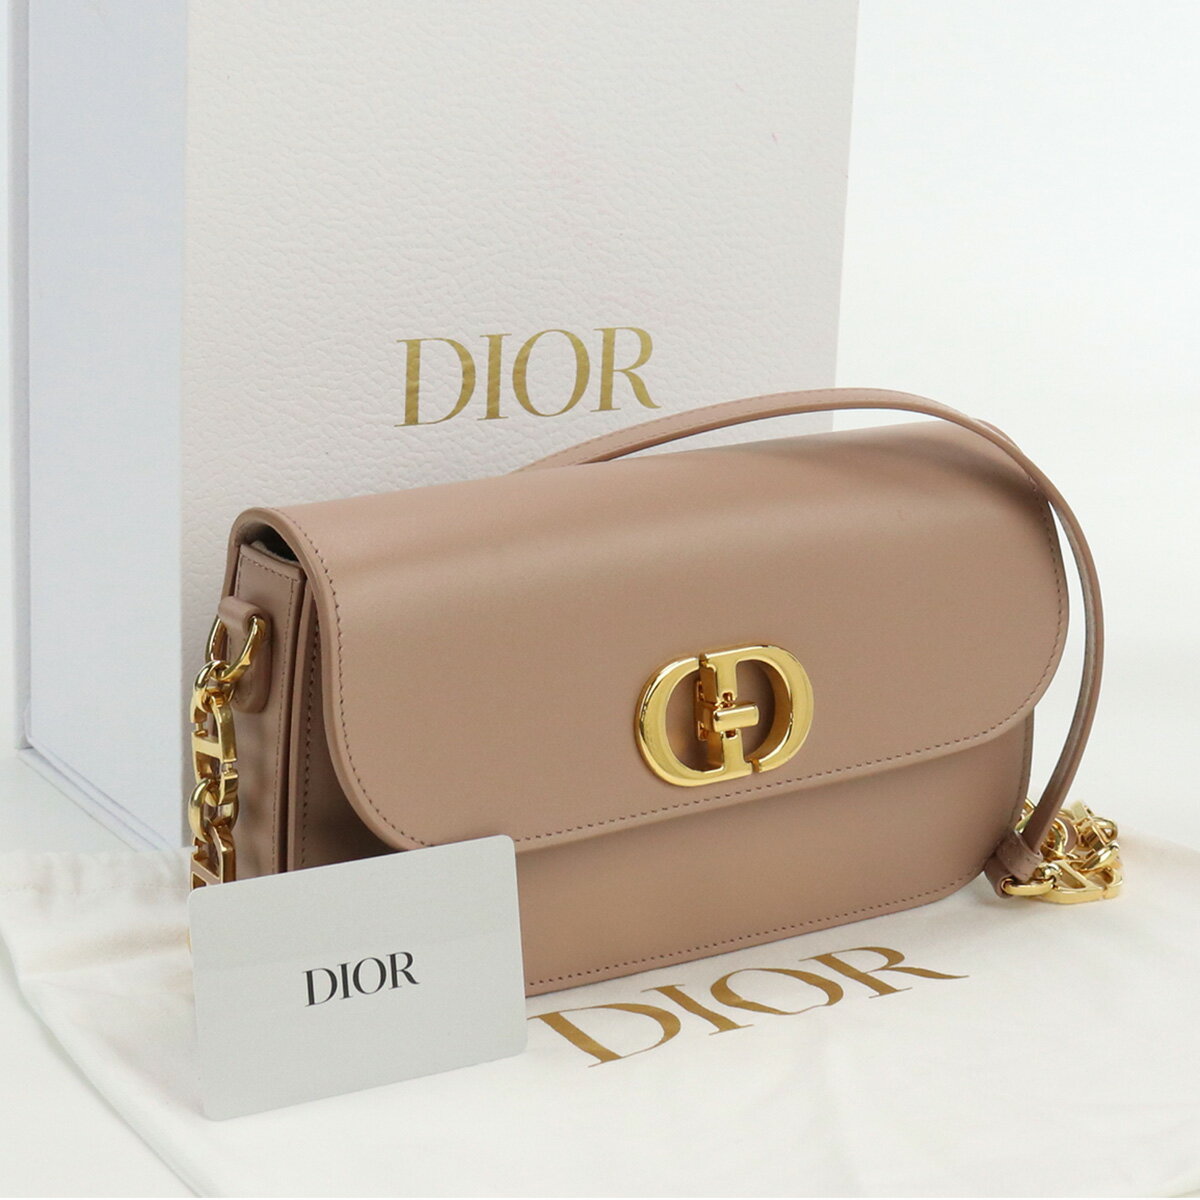 【中古美品】ディオール(Christian Dior) 30